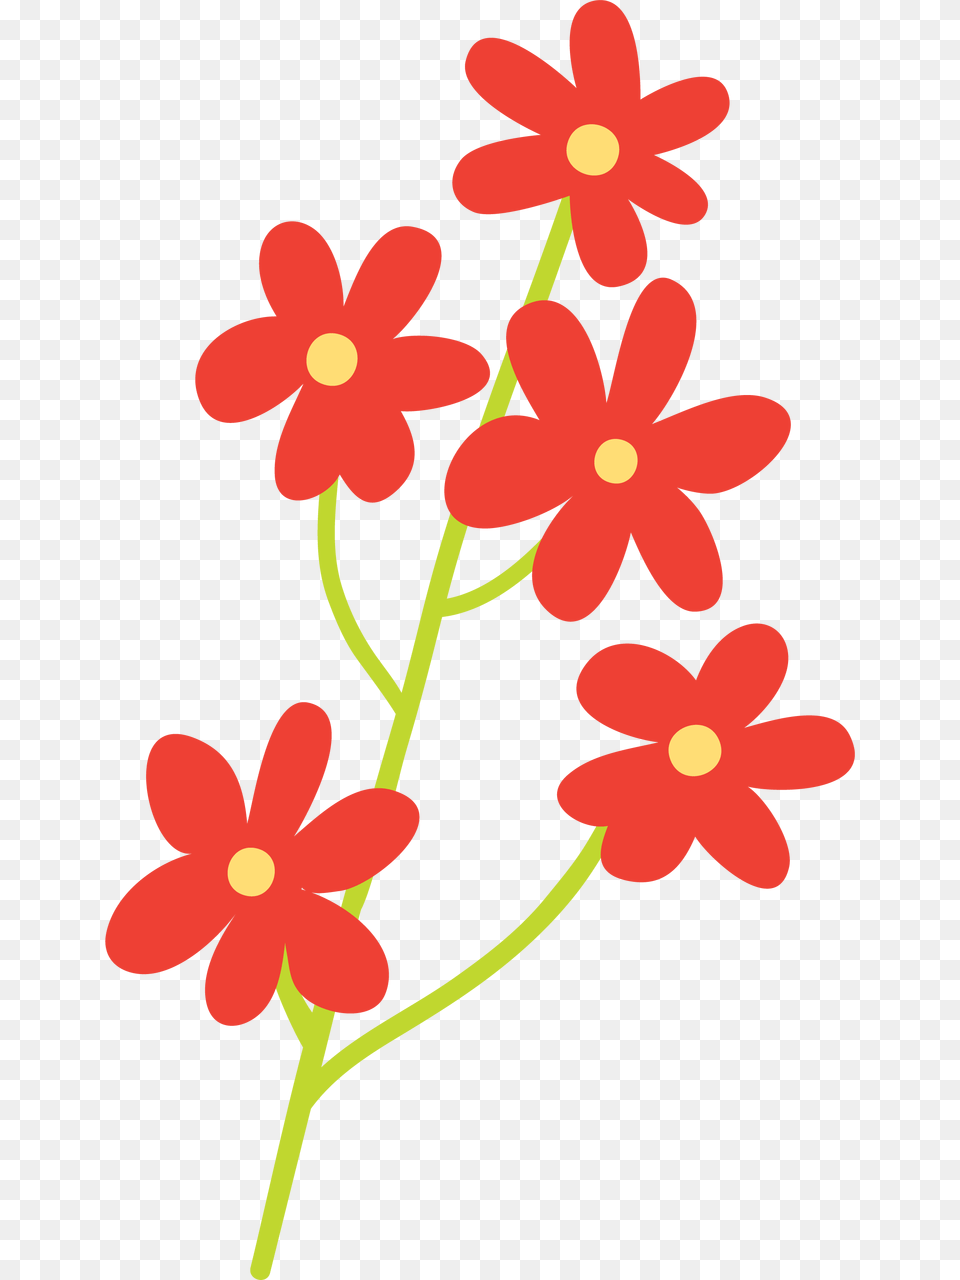 Easter Wishes Flowers Svg Cut File, Flower, Plant, Art, Floral Design Png Image